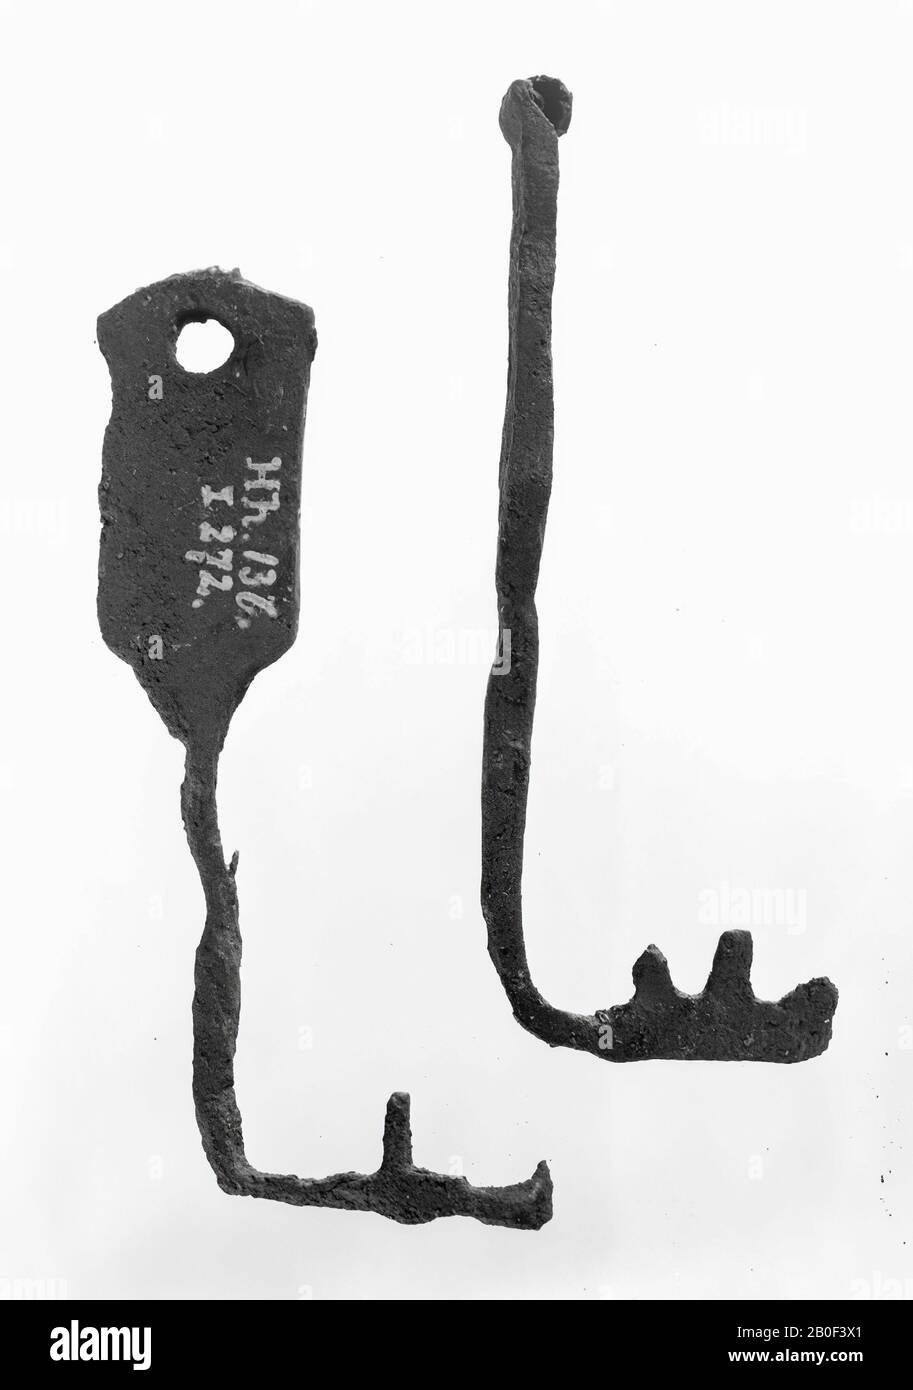 Chiave in ferro a due denti, trovata insieme alla serratura Hh 134., chiave, metallo, ferro, lunghezza: 10,5 cm, romana 1-200, Paesi Bassi, Limburg, Maastricht, Heer, Baccerbosch Foto Stock